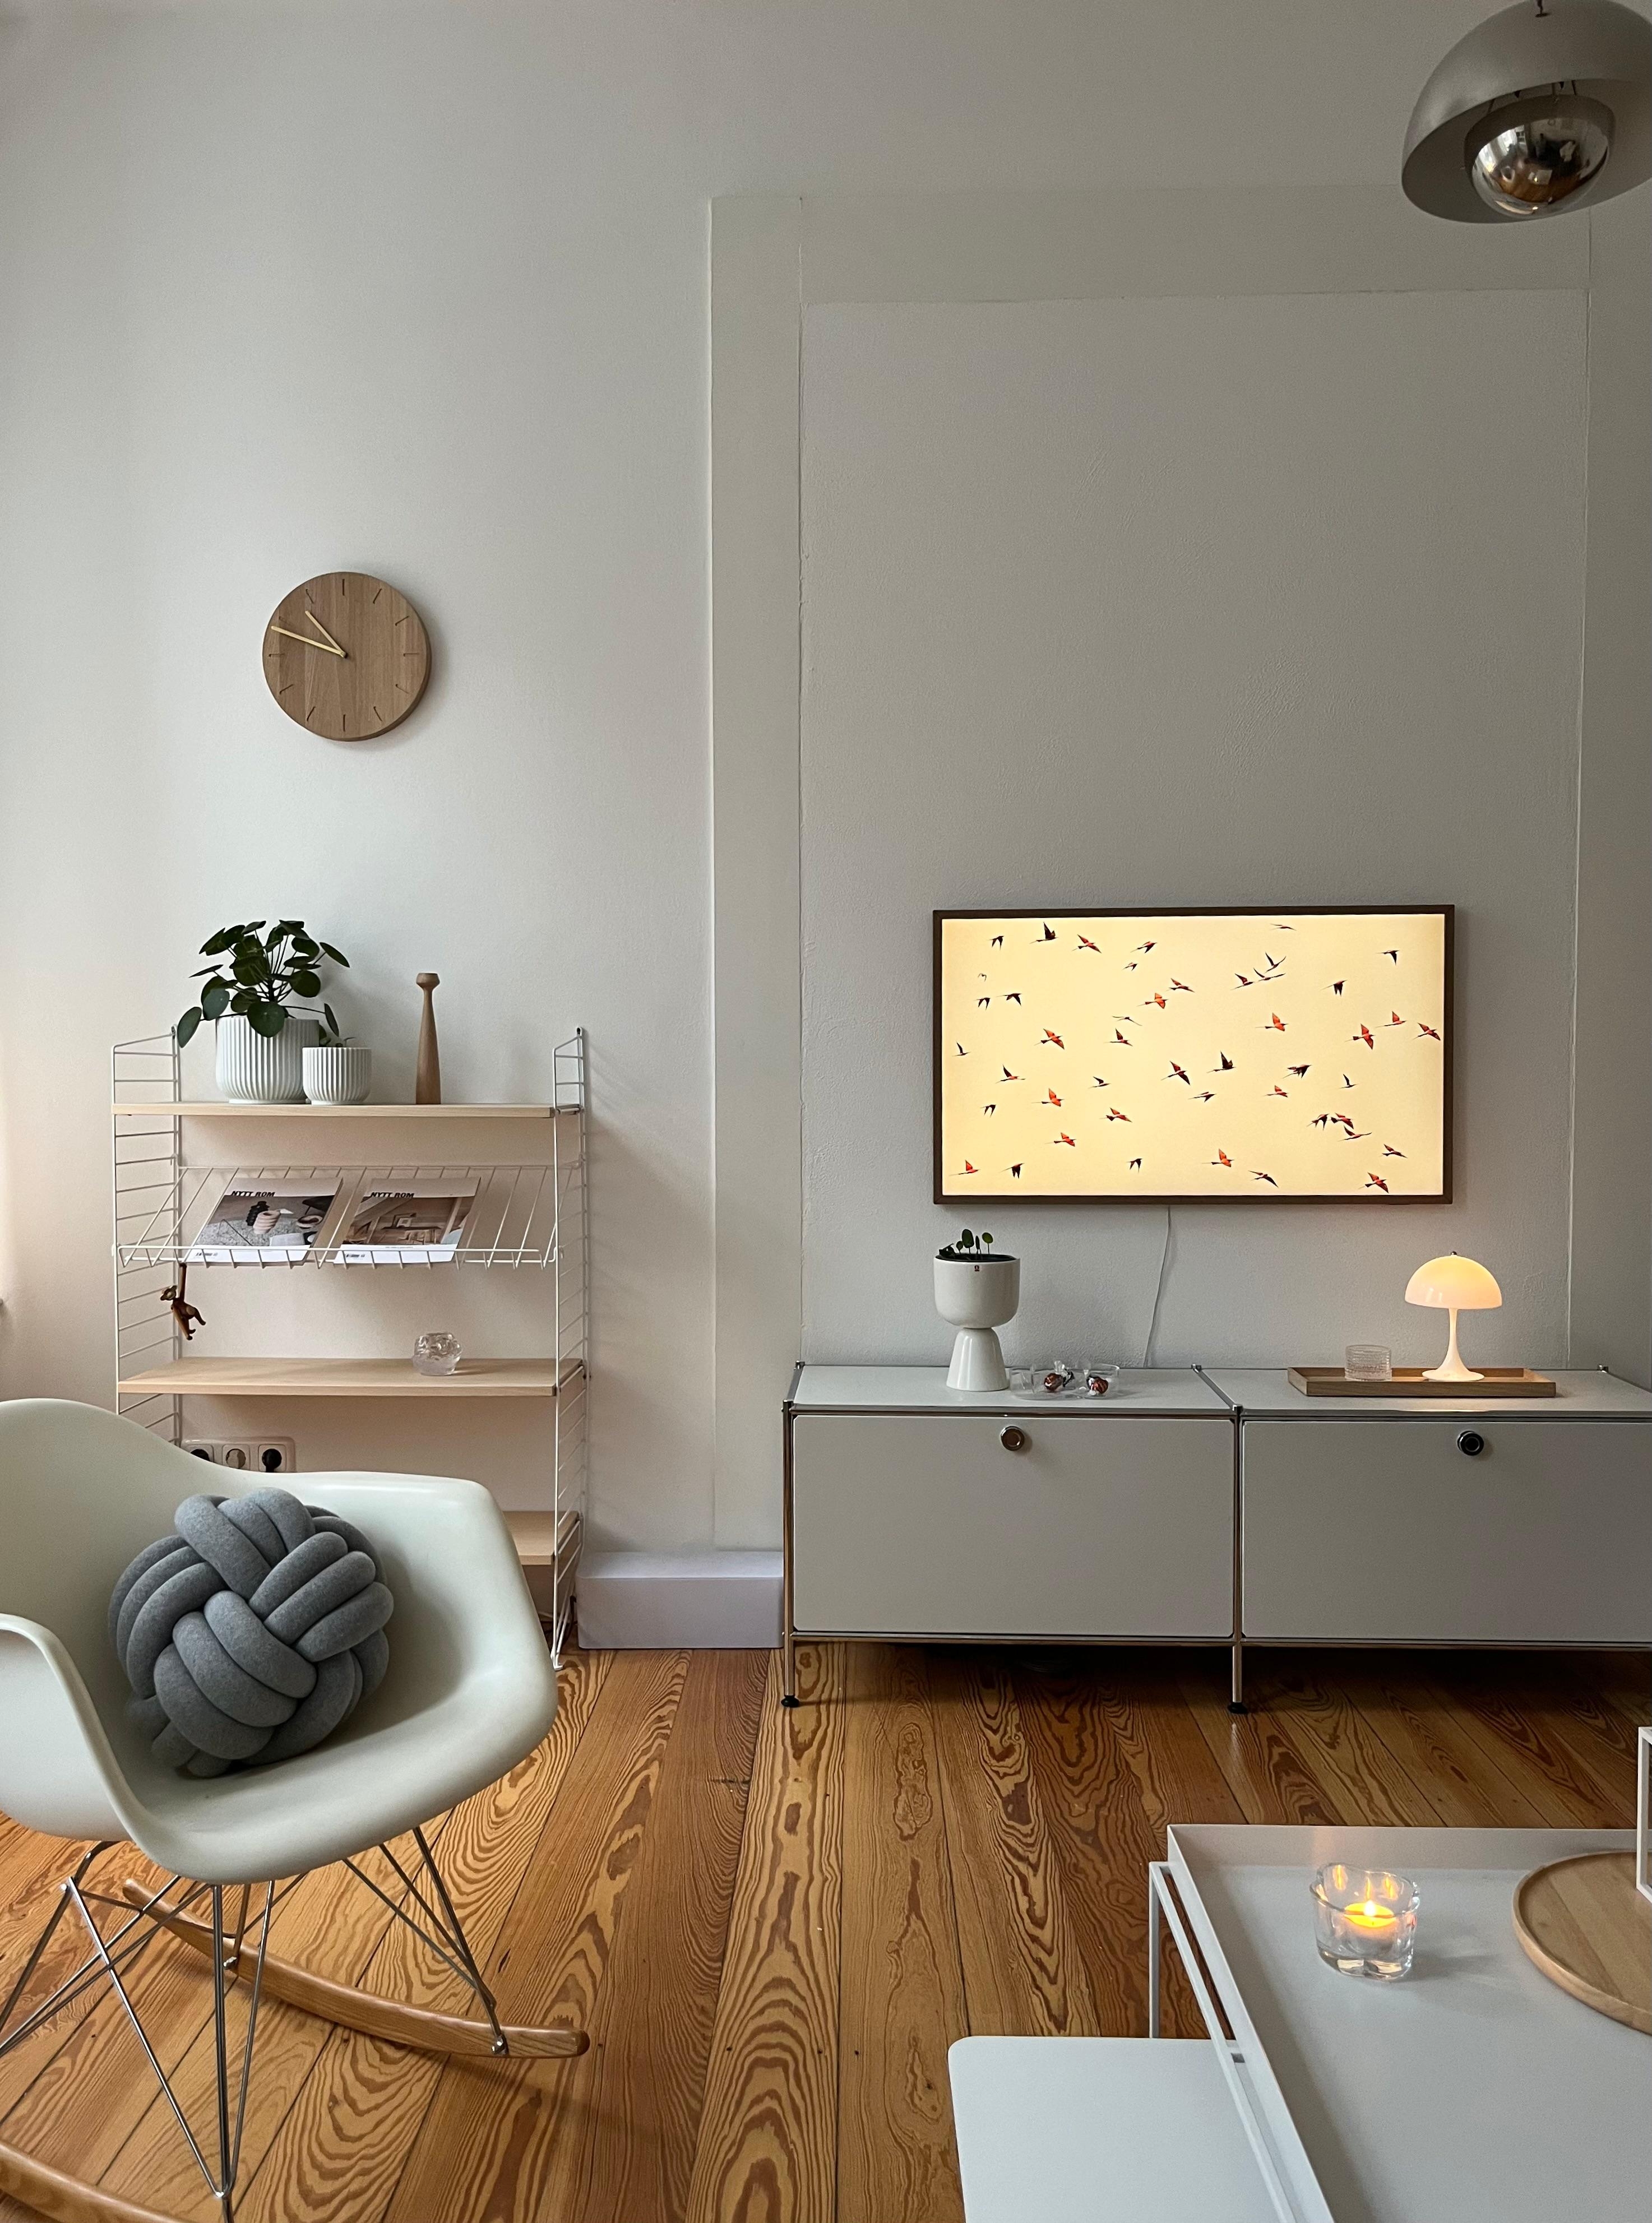 #wohnzimmer #altbauliebe #minimalismus #leuchtenliebe #hygge #danishdesign